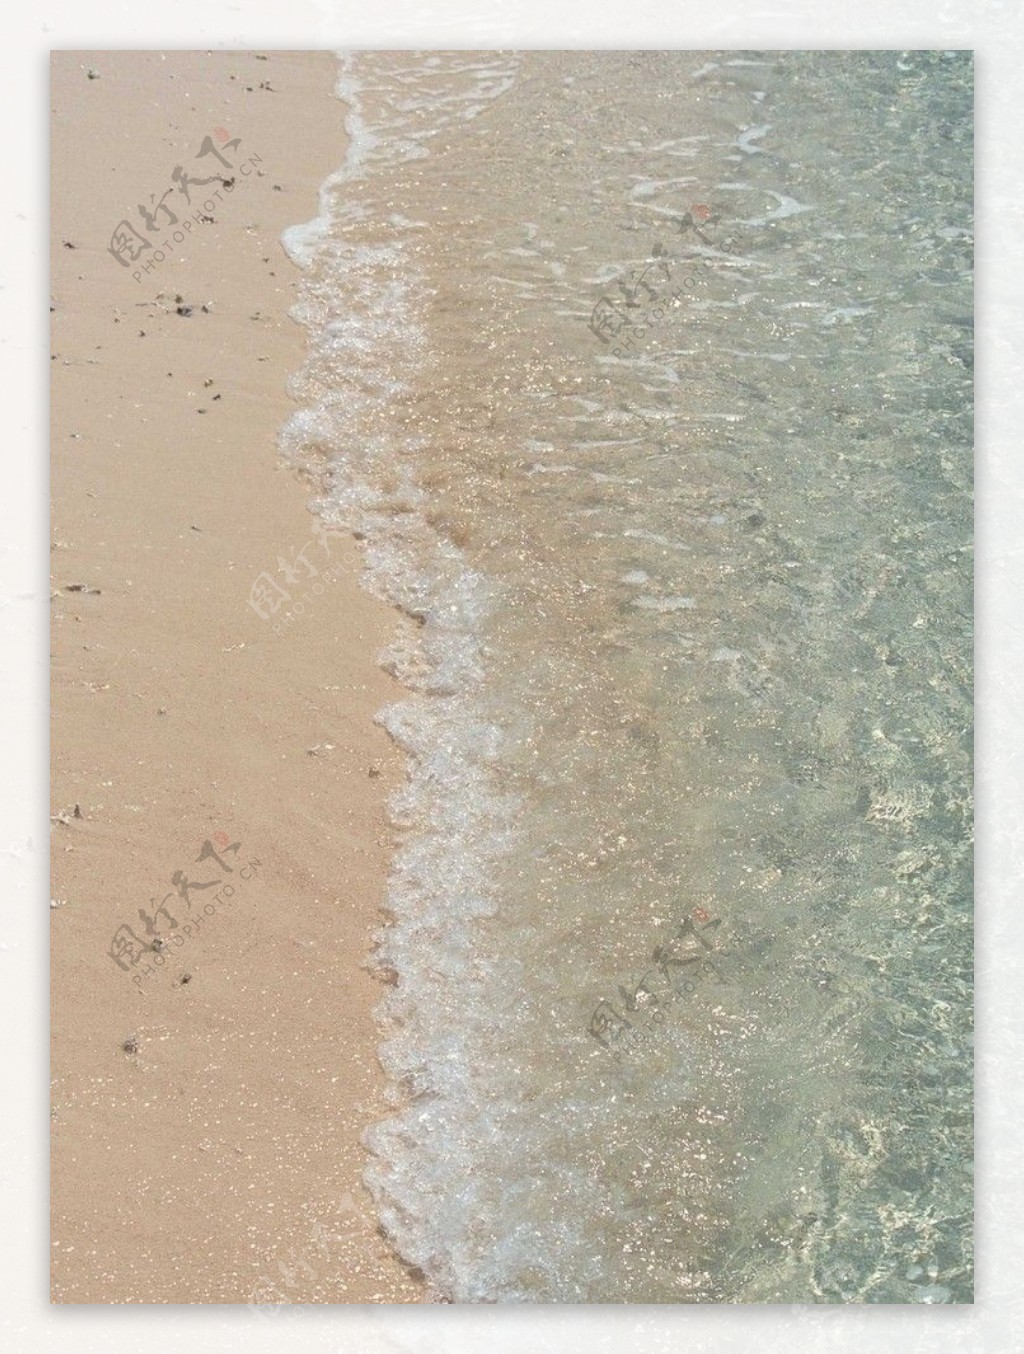 沙滩风光图片